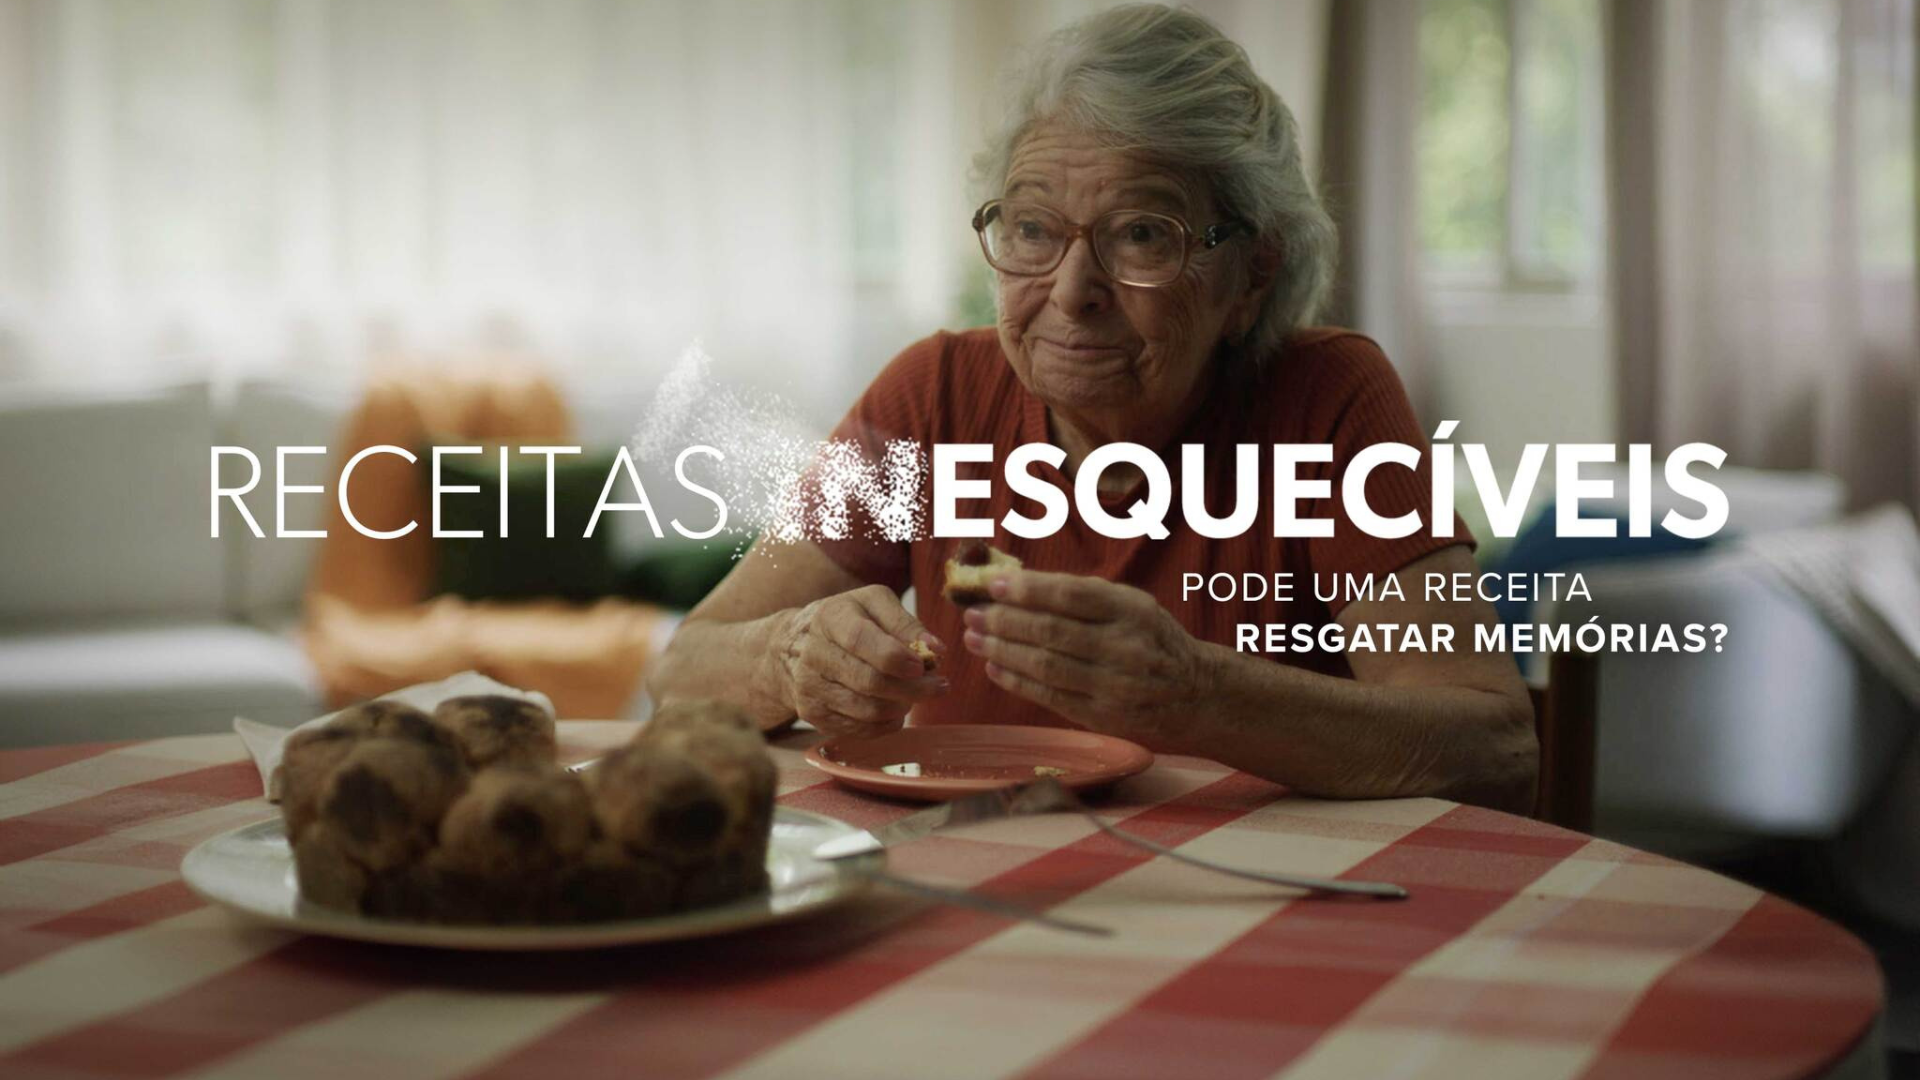 Nestlé e Publicis resgatam memórias de pessoas com Alzheimer com 'Receitas Inesquecíveis'